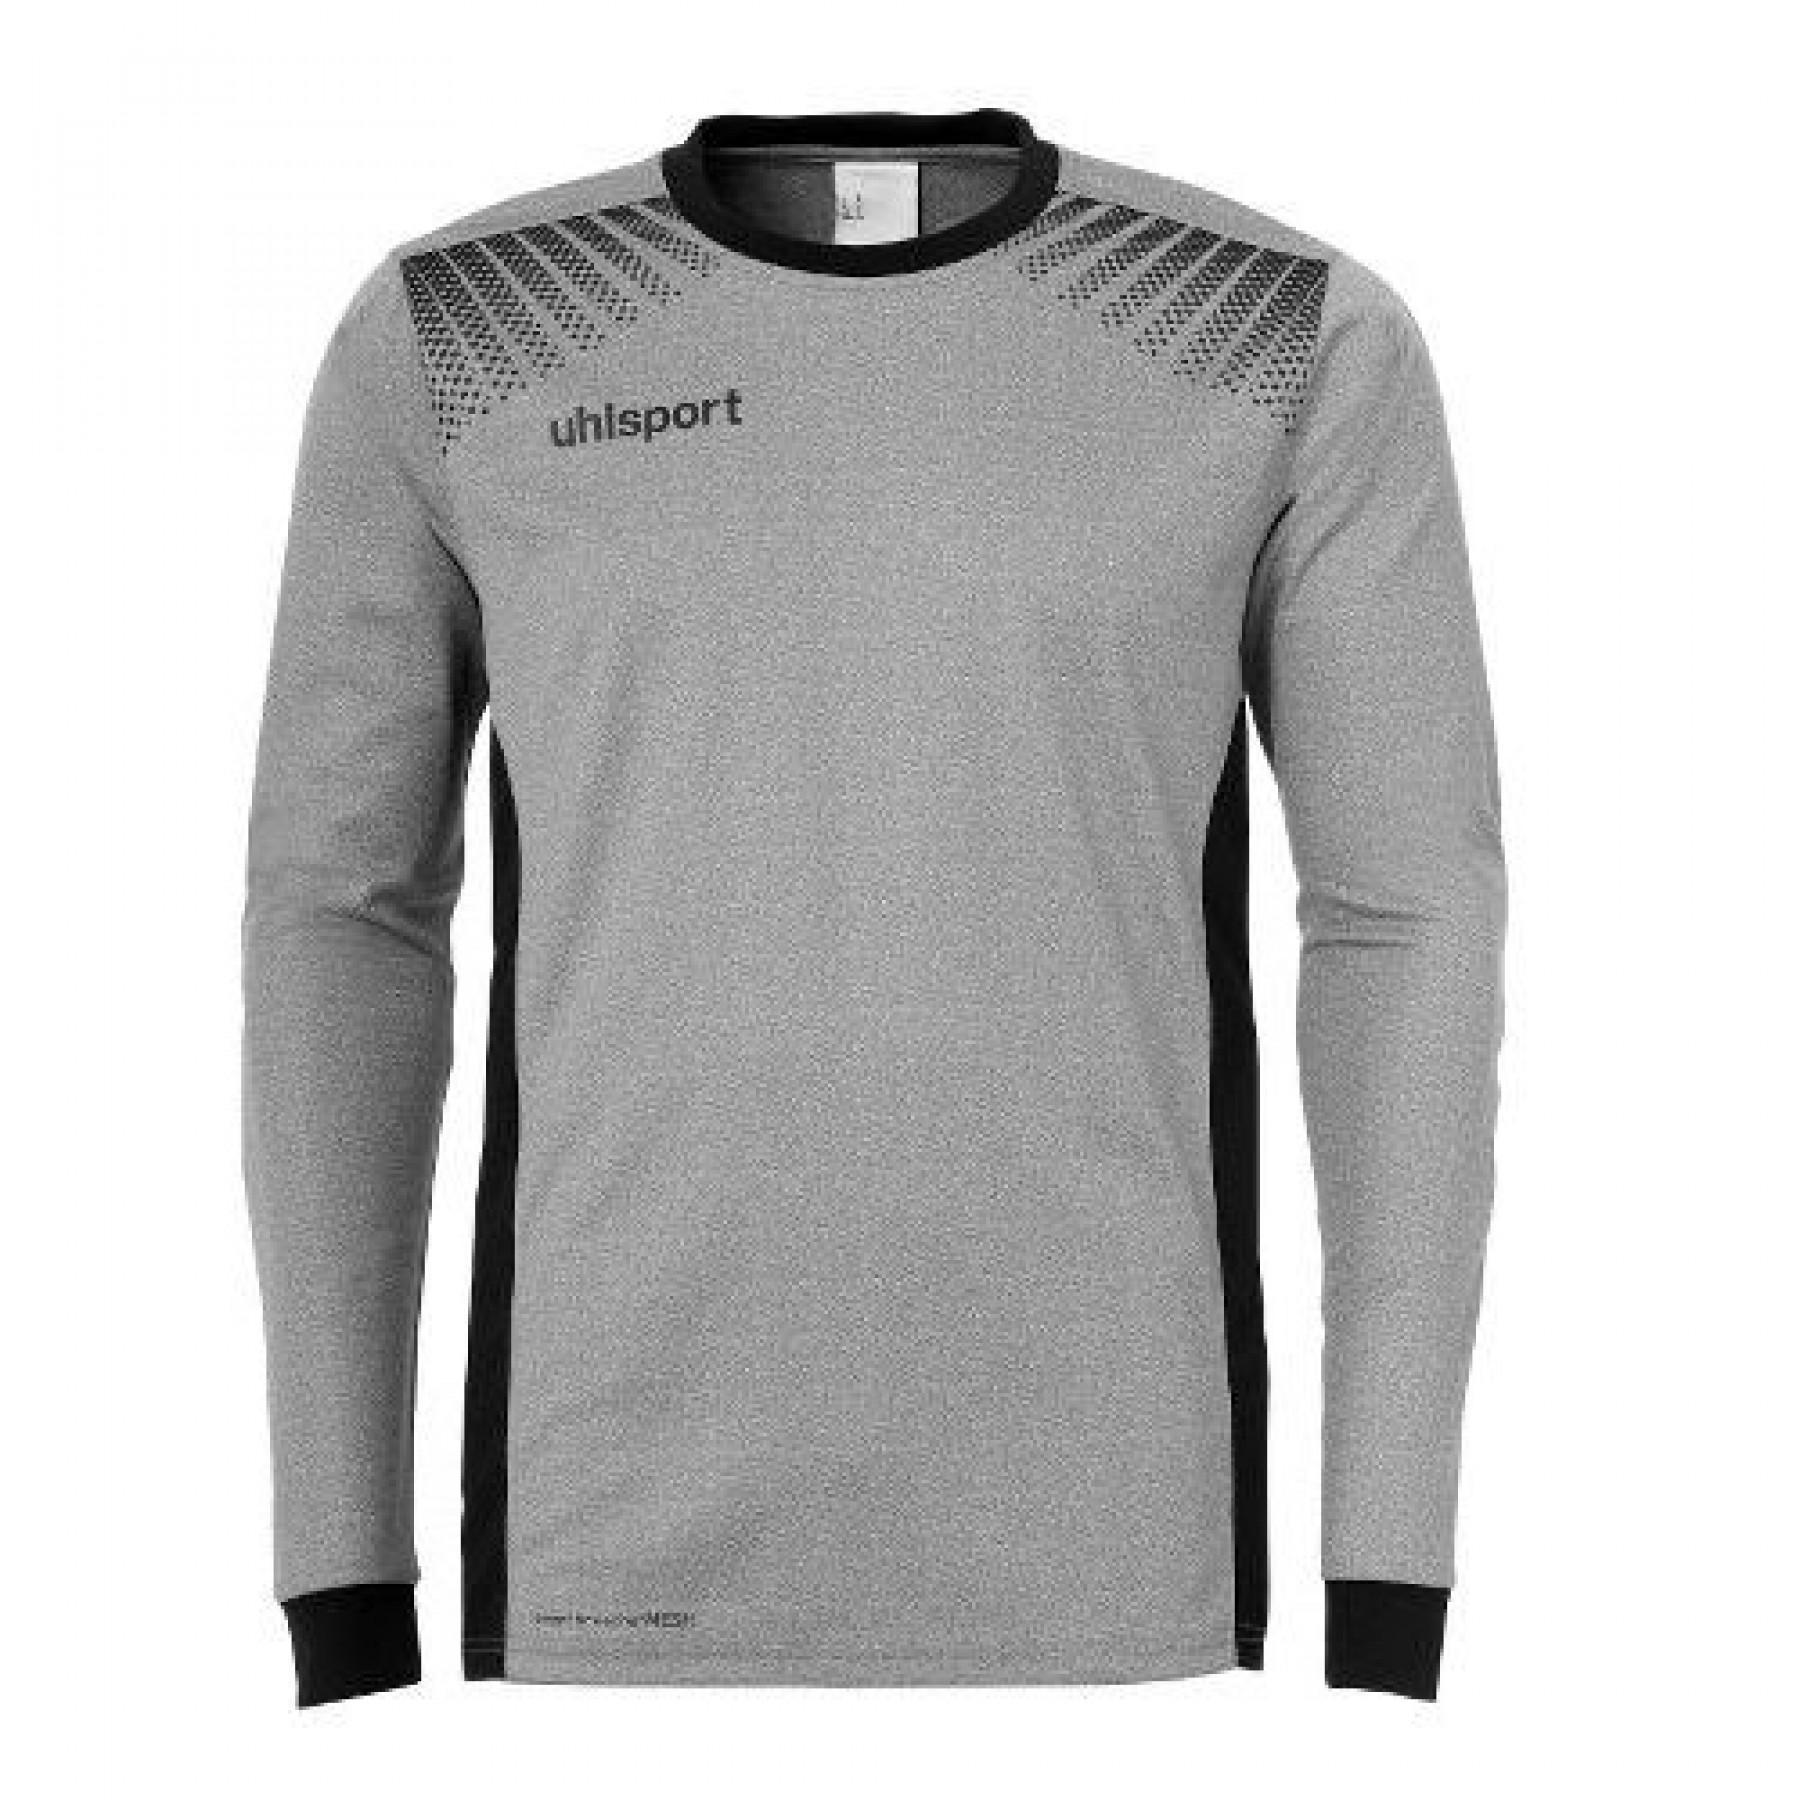 Details about   Uhlsport Football Soccer Kids Goalkeeper GK Goalie Long Sleeve Shirt Jersey Top